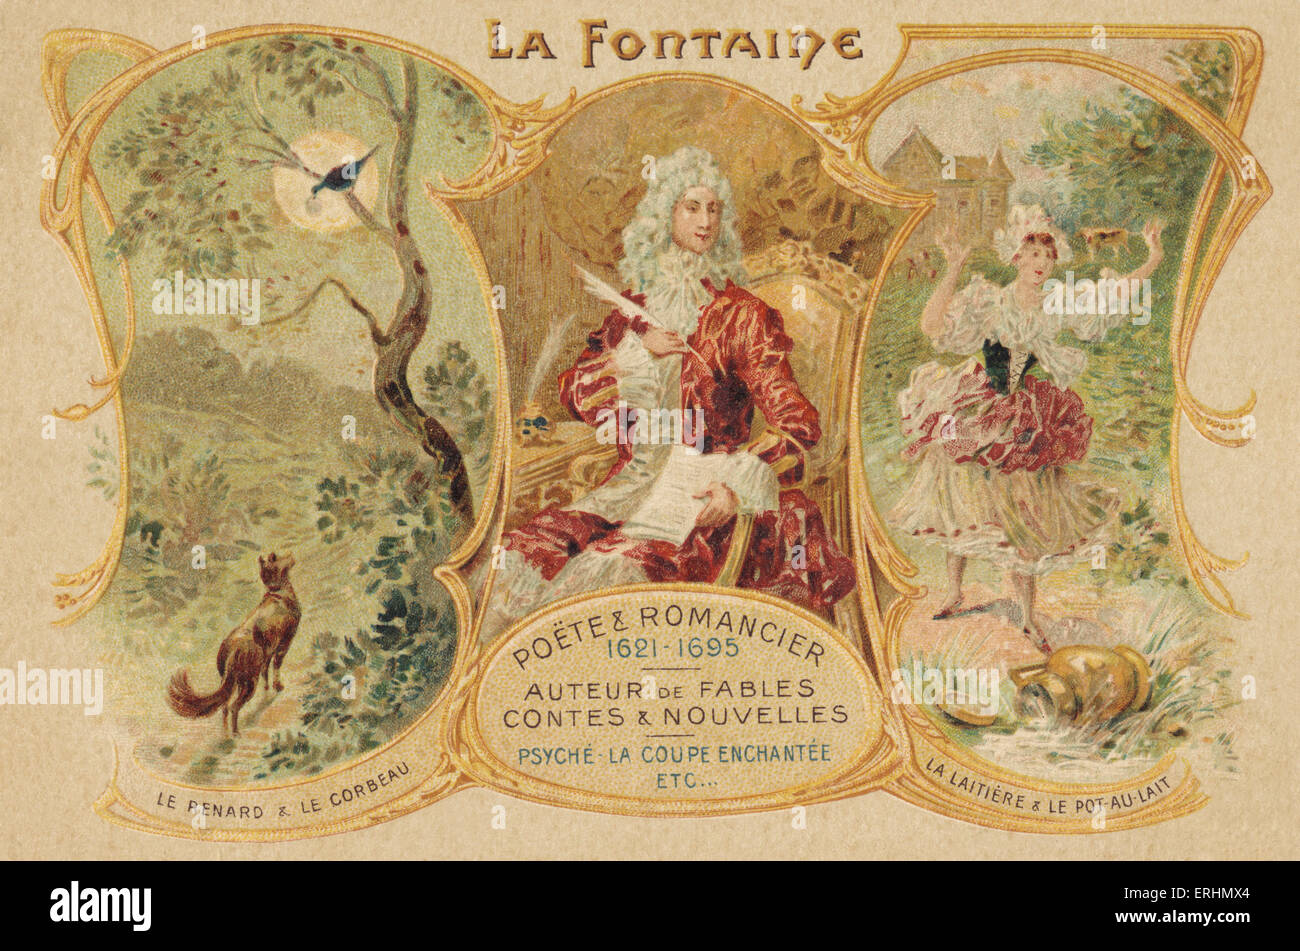 Jean de La Fontaine - French poet Sat in chair writing, with 'Le renard & le corbeau' and 'La laitiere & le pot-au lait' JF: 8 July, 1621 – 13 April 1695 Stock Photo